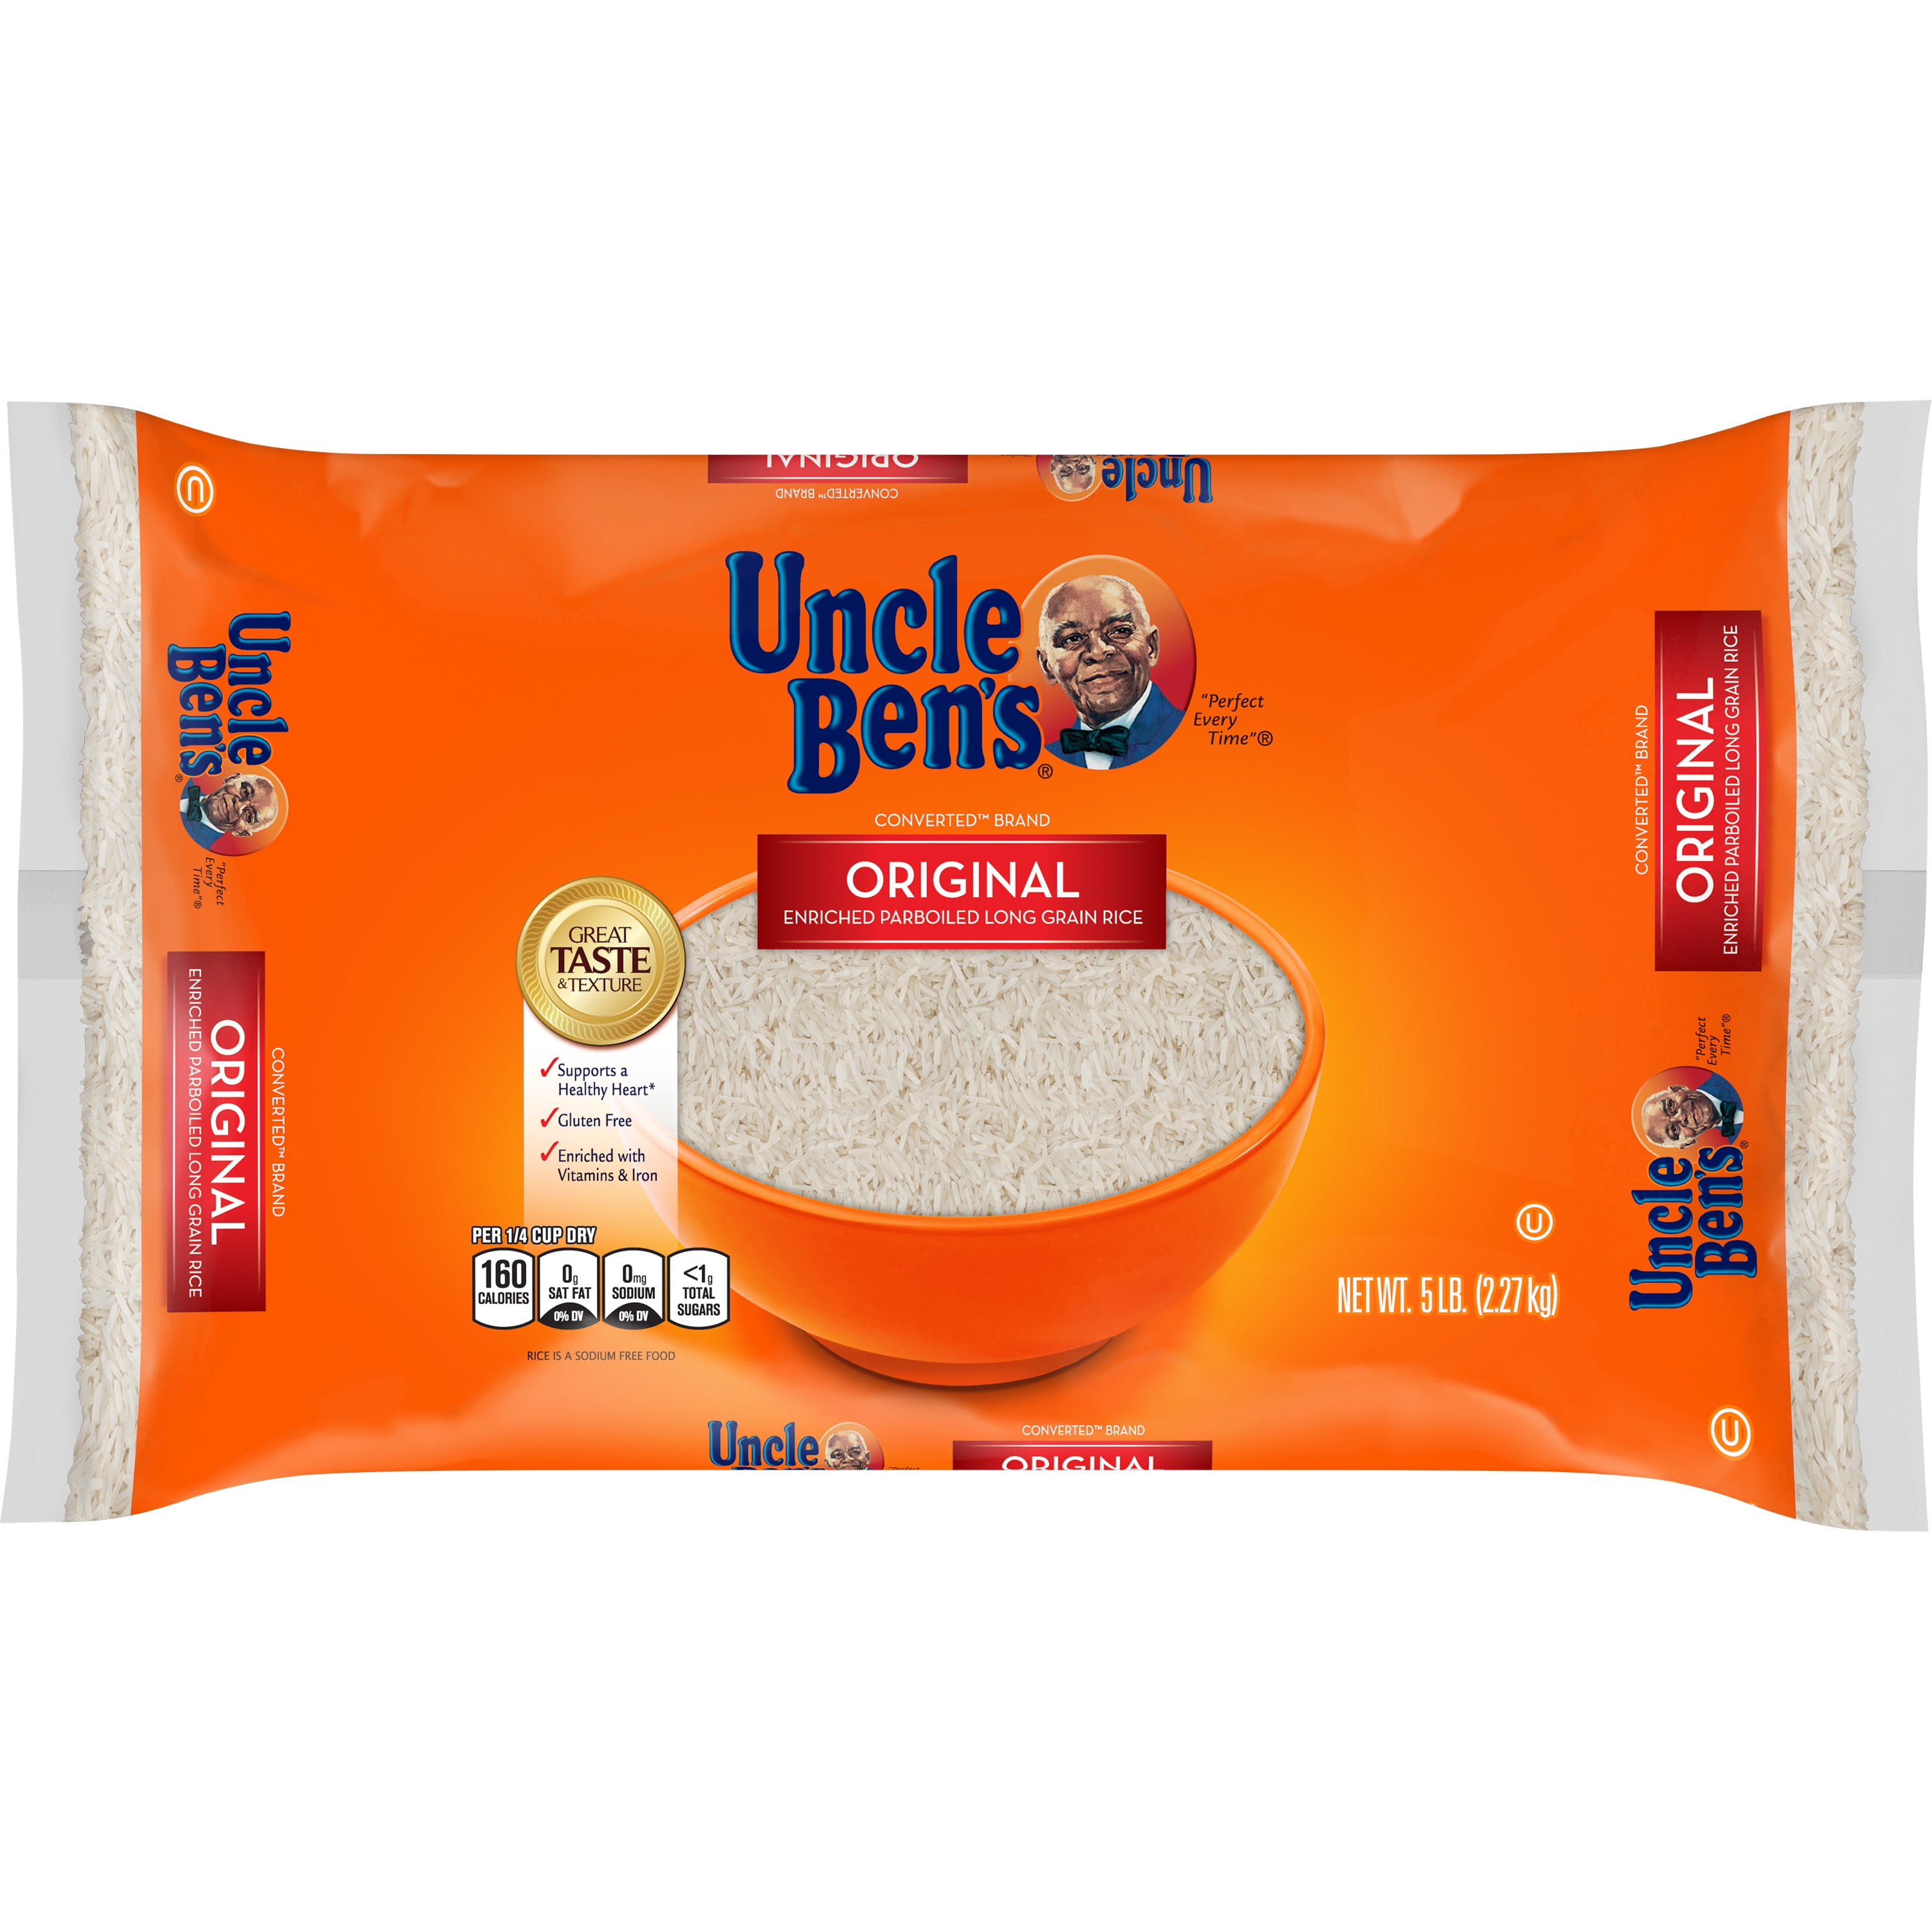 Uncle Ben's rice to get new name, Ben's Original